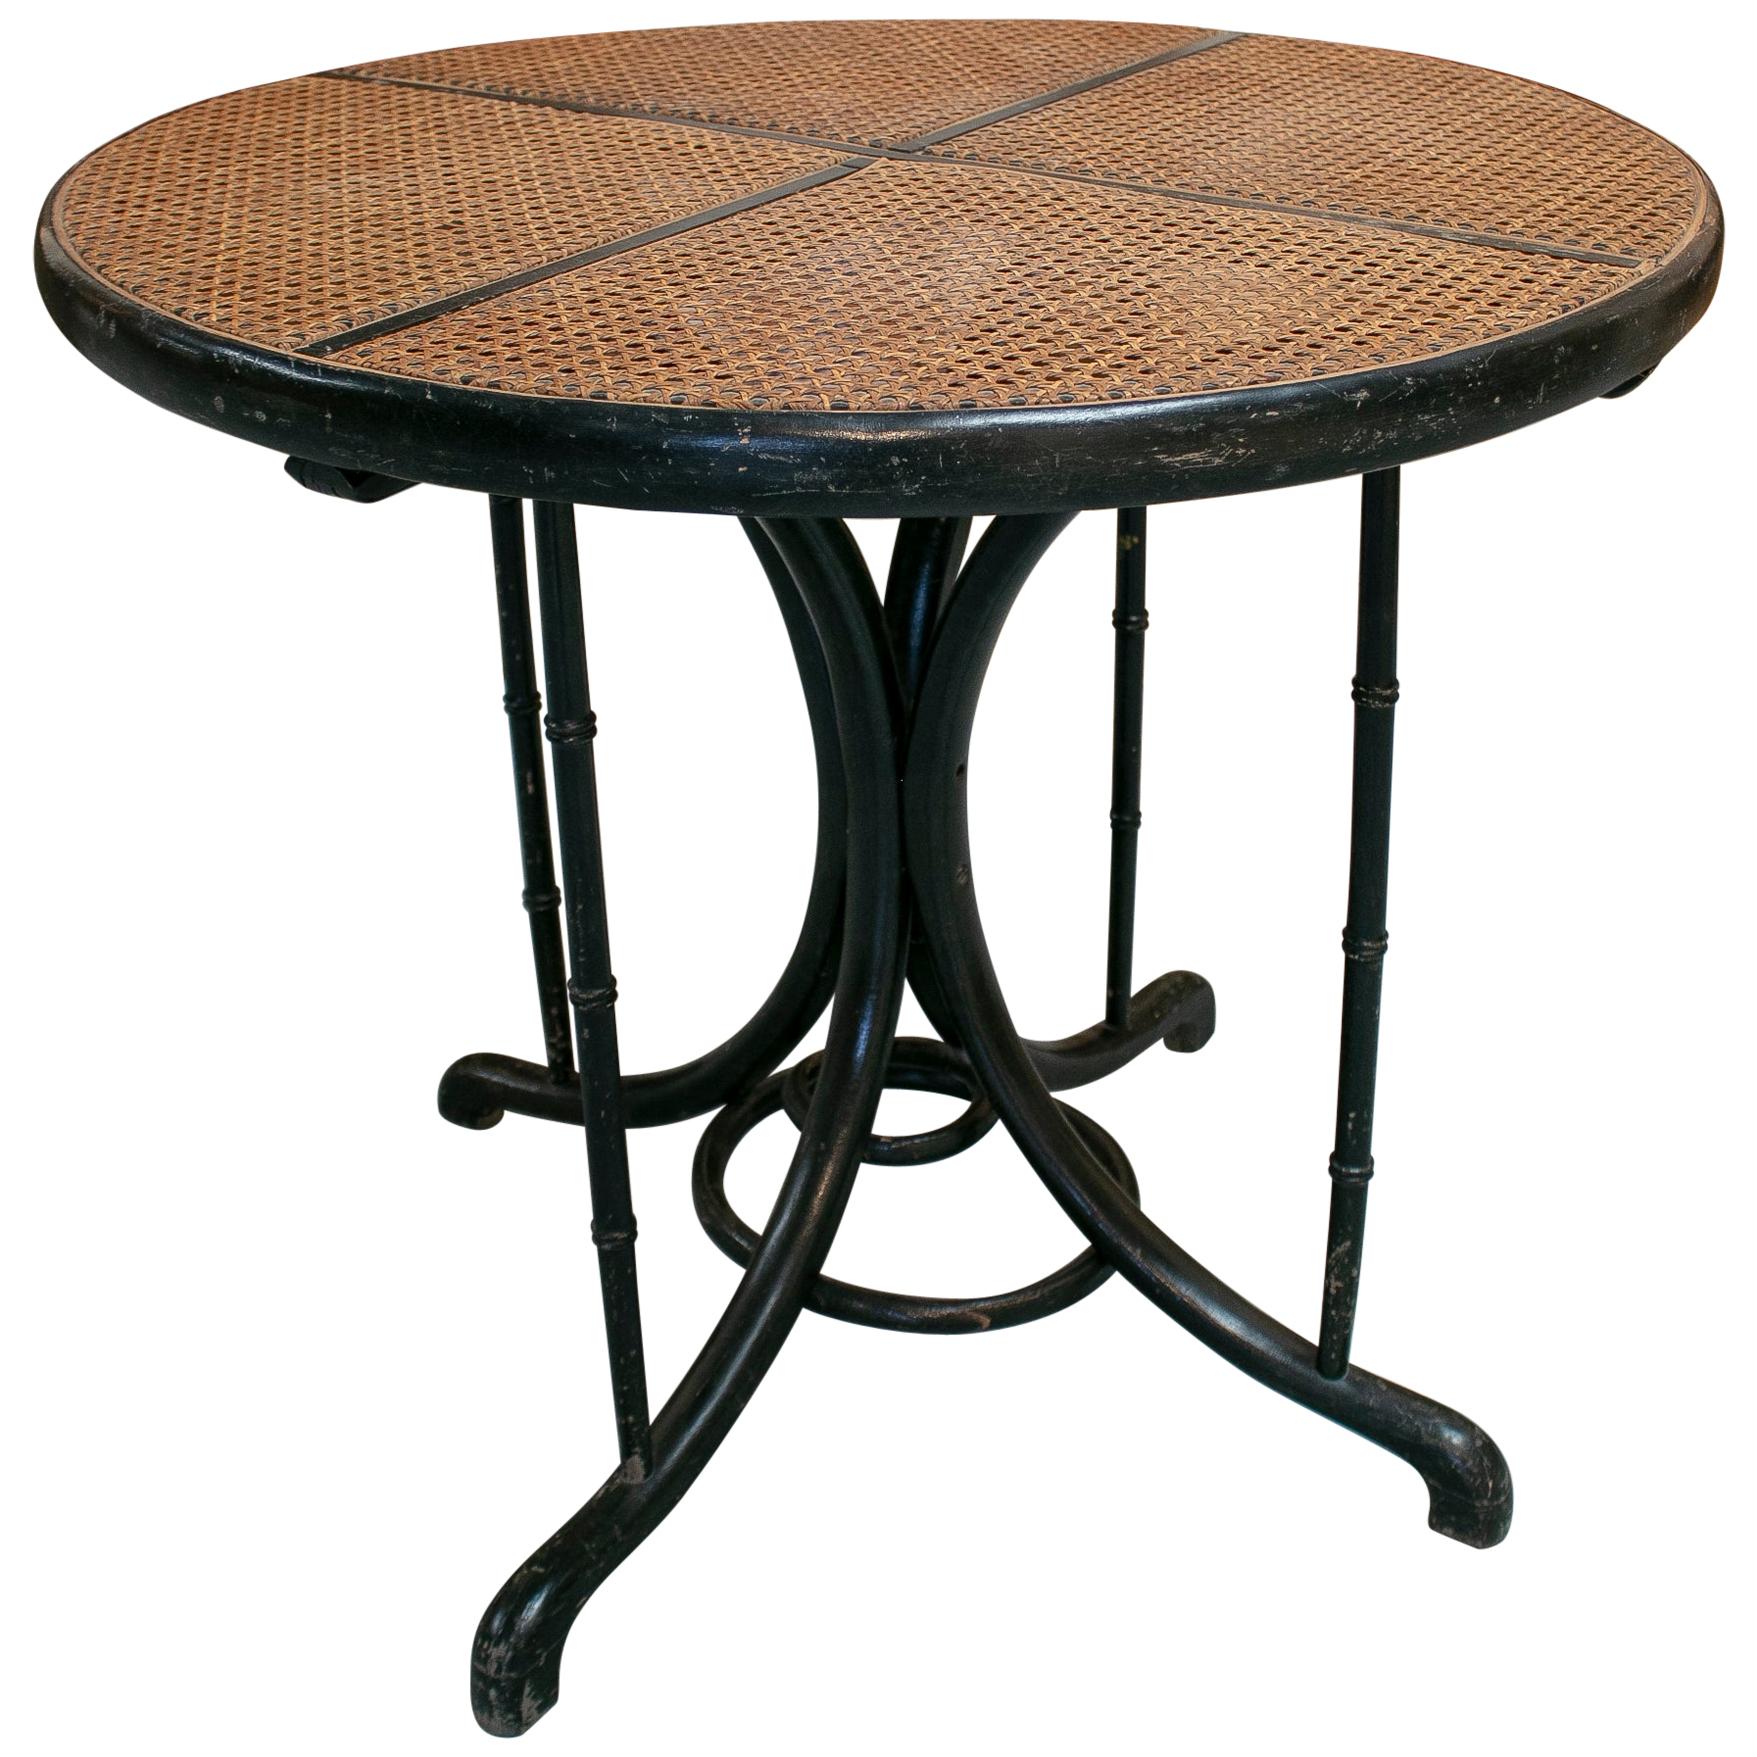 Table ronde en bois et osier tressé, style Thonet, années 1950